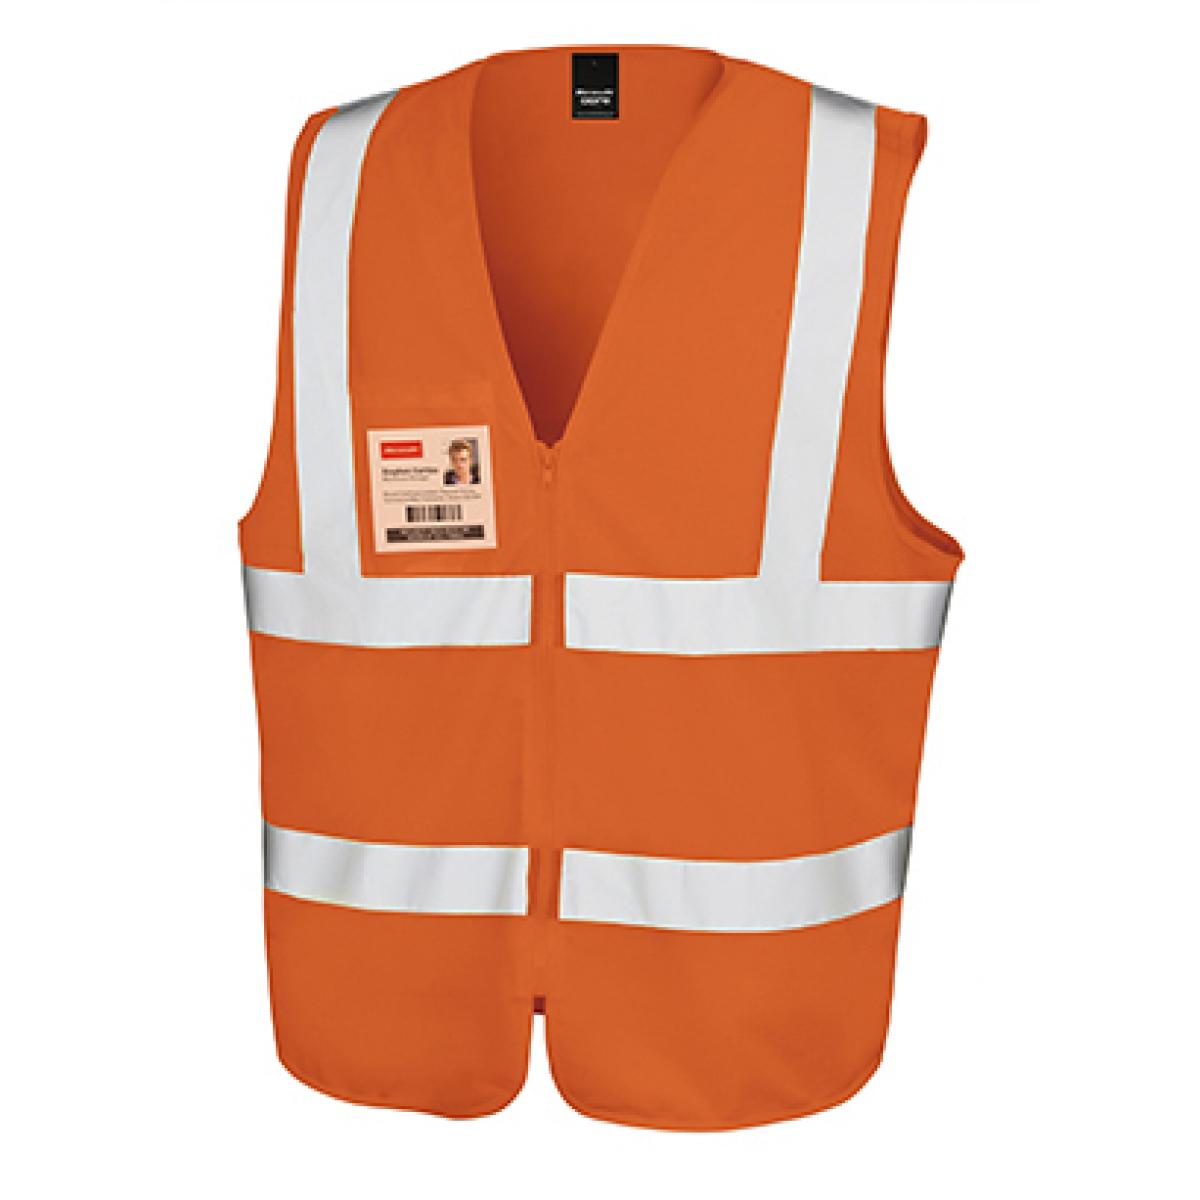 Hersteller: Result Core Herstellernummer: R202X Artikelbezeichnung: Herren Core Zip Safety Tabard / EN20471 Klasse 2 Farbe: Fluorescent Orange